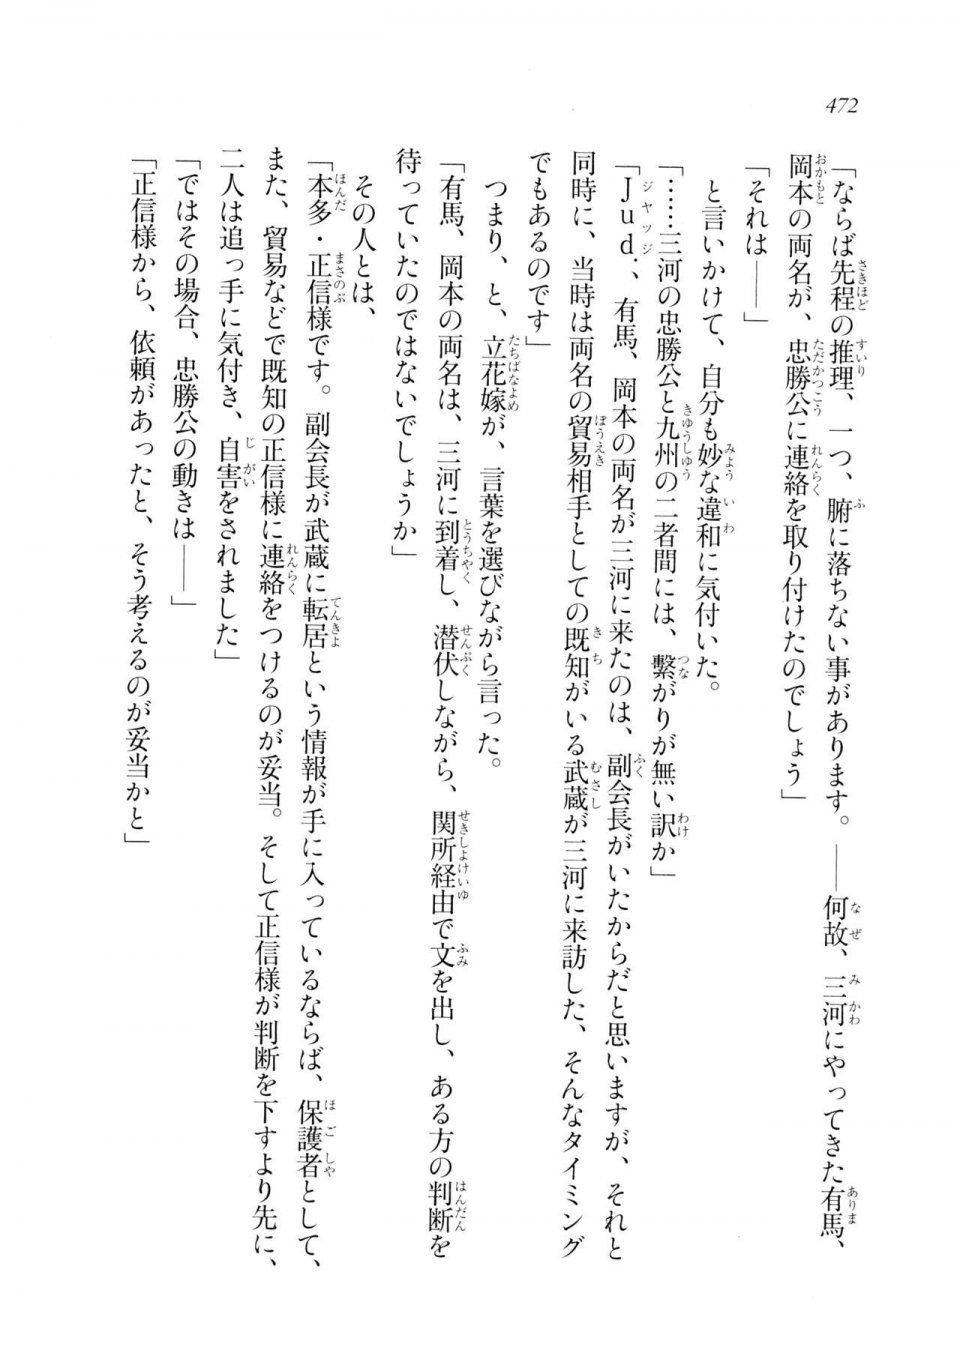 Kyoukai Senjou no Horizon LN Sidestory Vol 2 - Photo #470